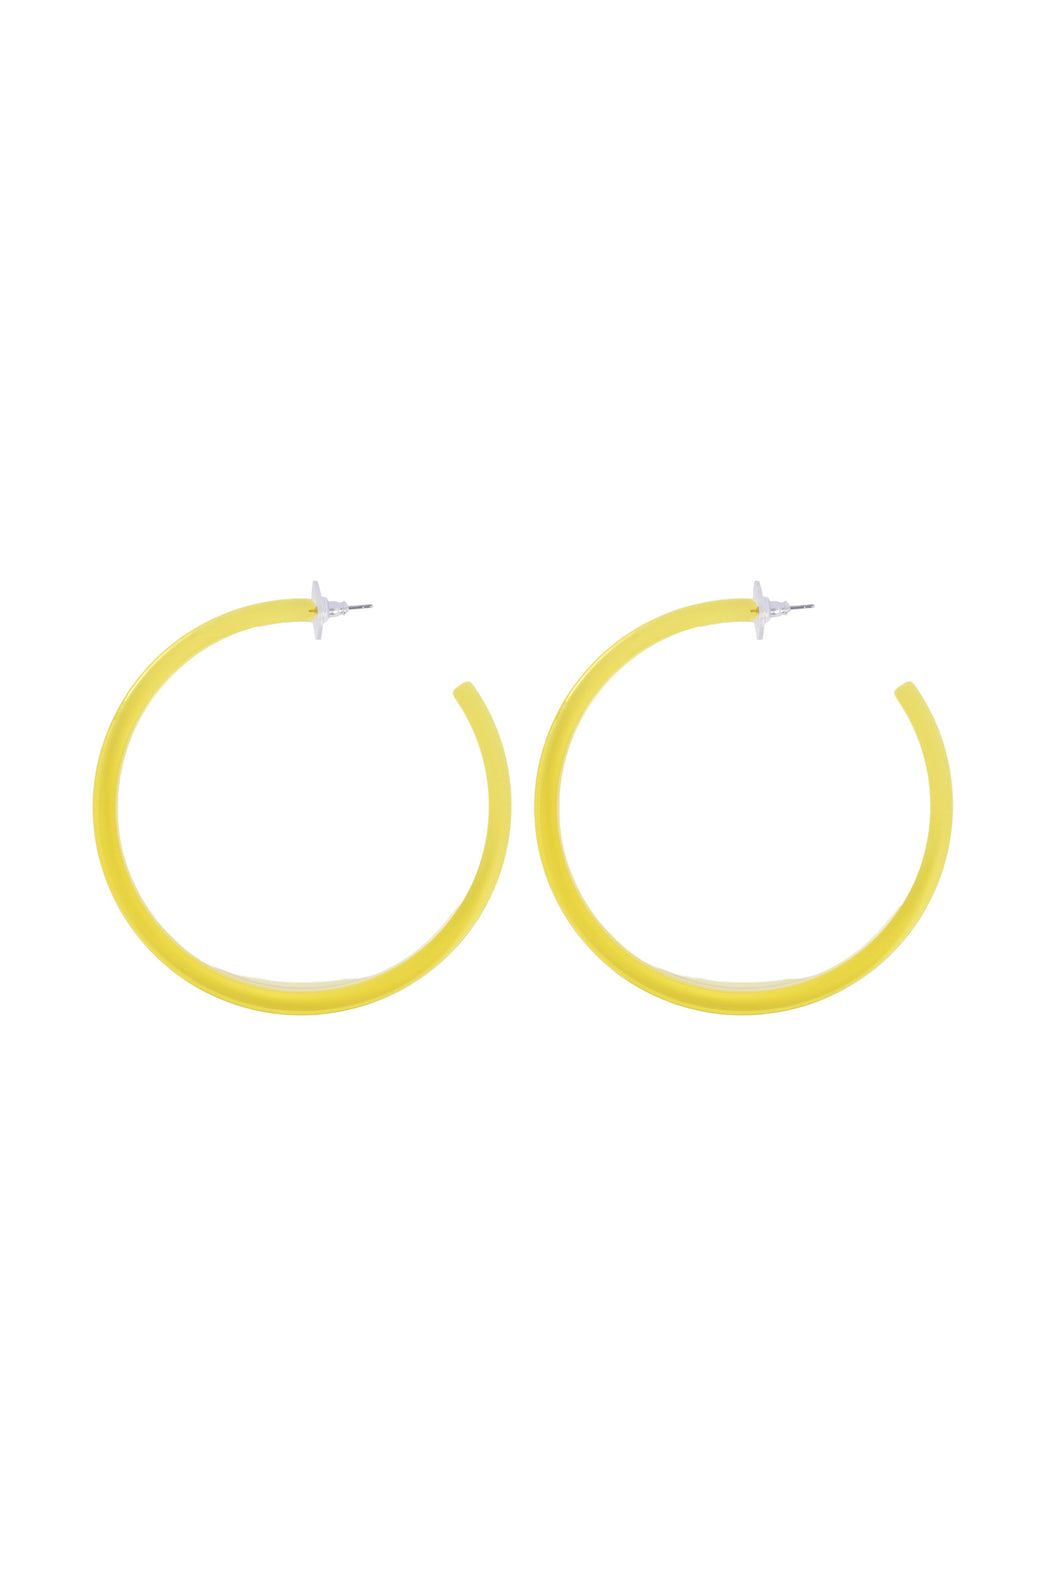 Infinity Hoops (earrings) Yellow